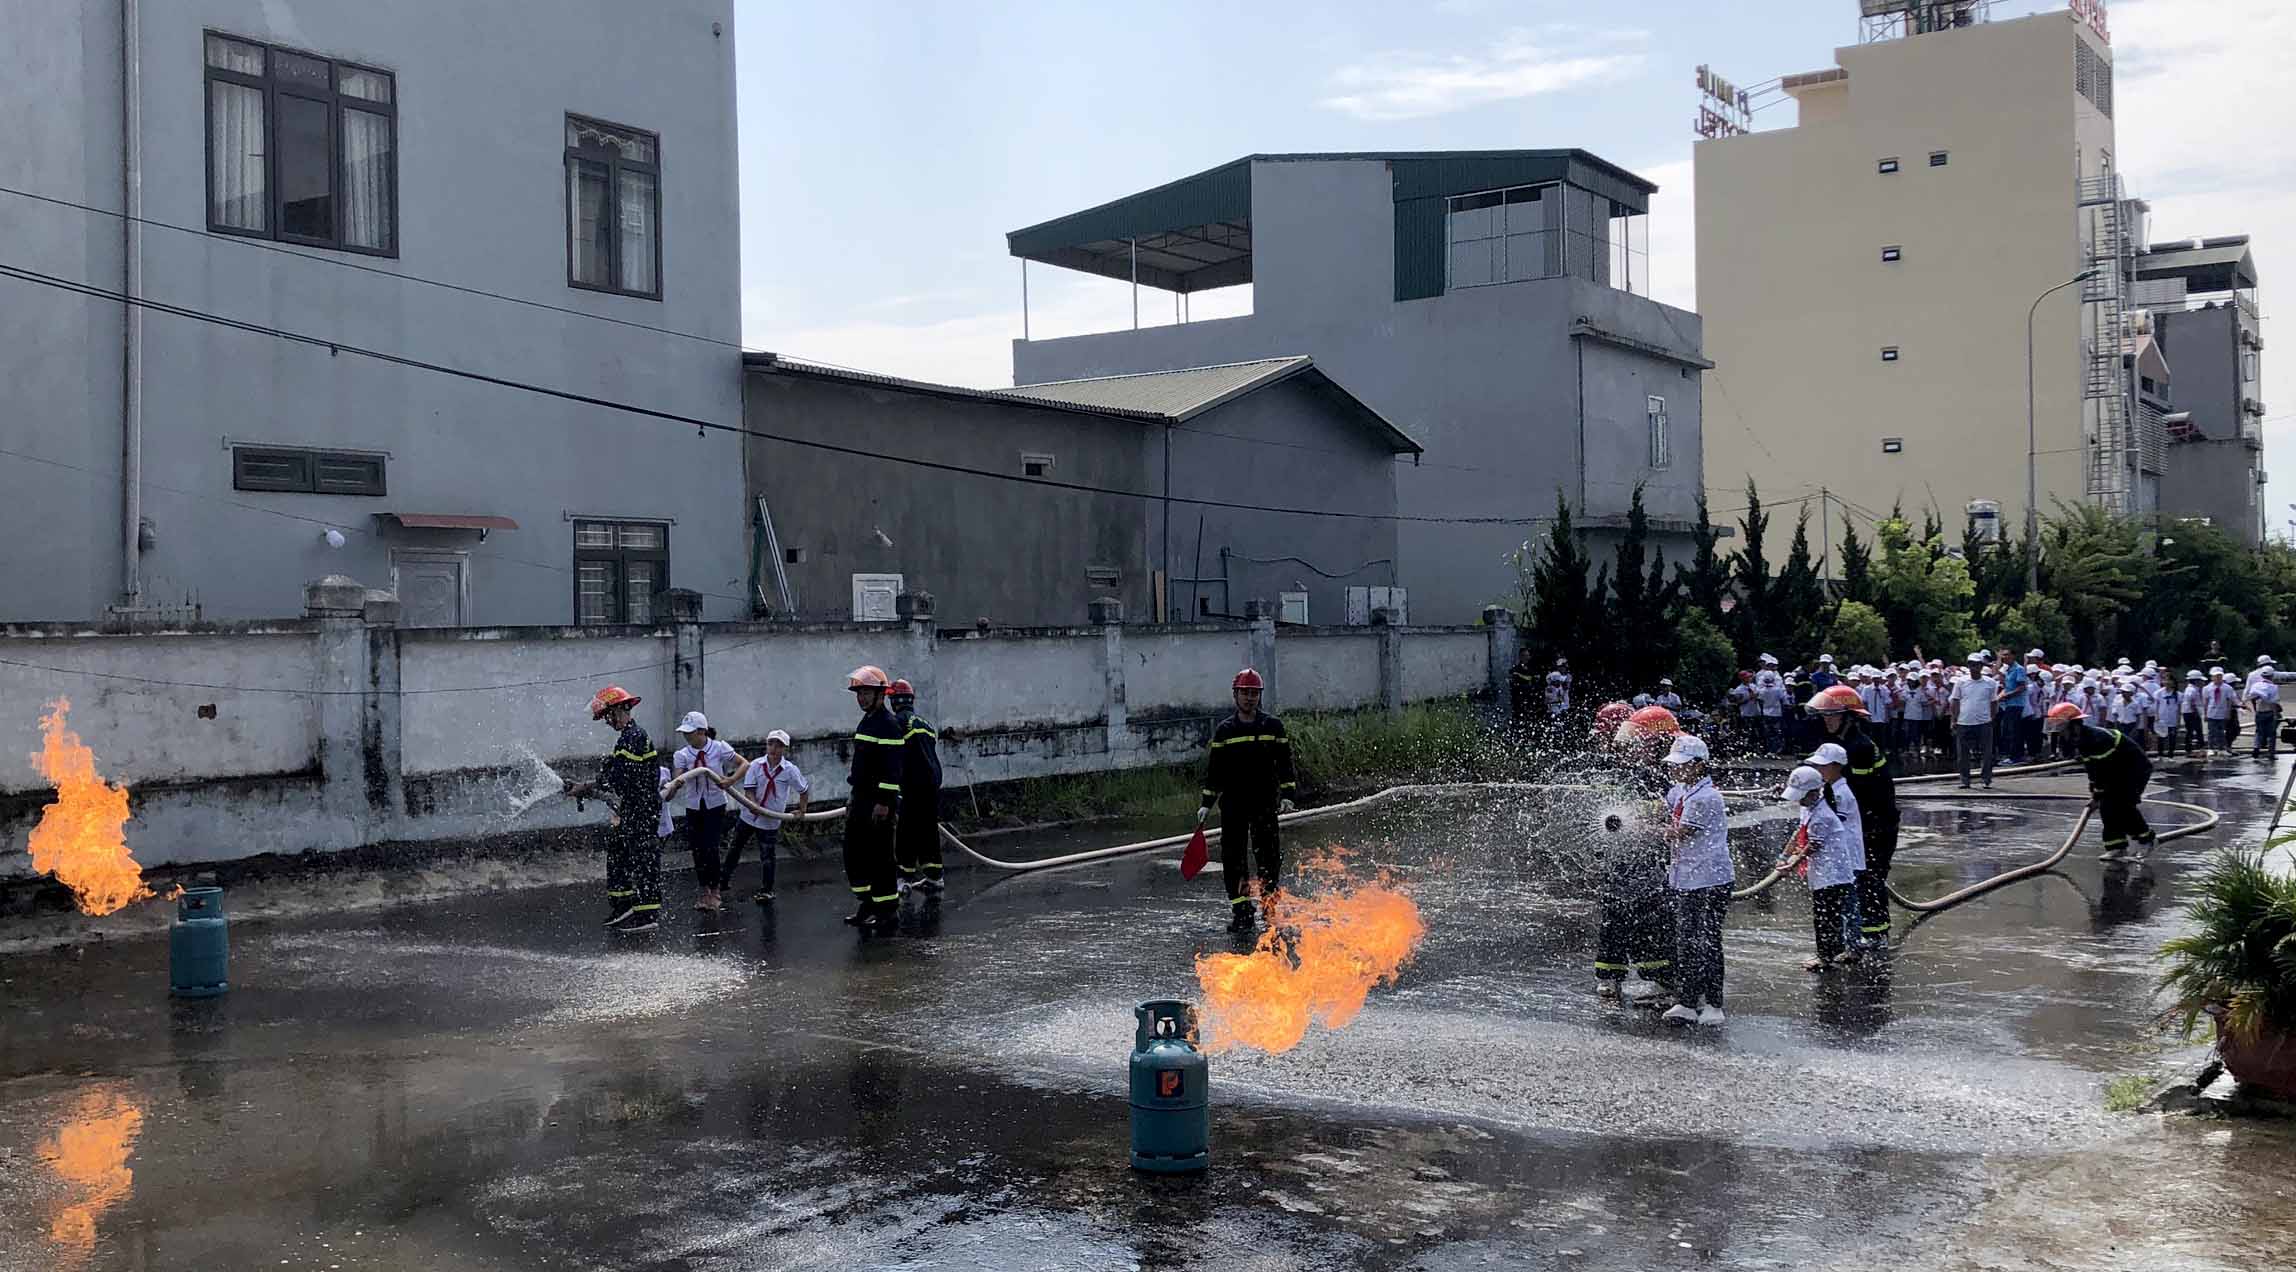 Cán bộ chiến sỹ Phòng Cảnh sát PCCC&CNCH - Công an tỉnh hướng dẫn học sinh trường Tiểu học Kim Đồng xử lý cháy bình gas